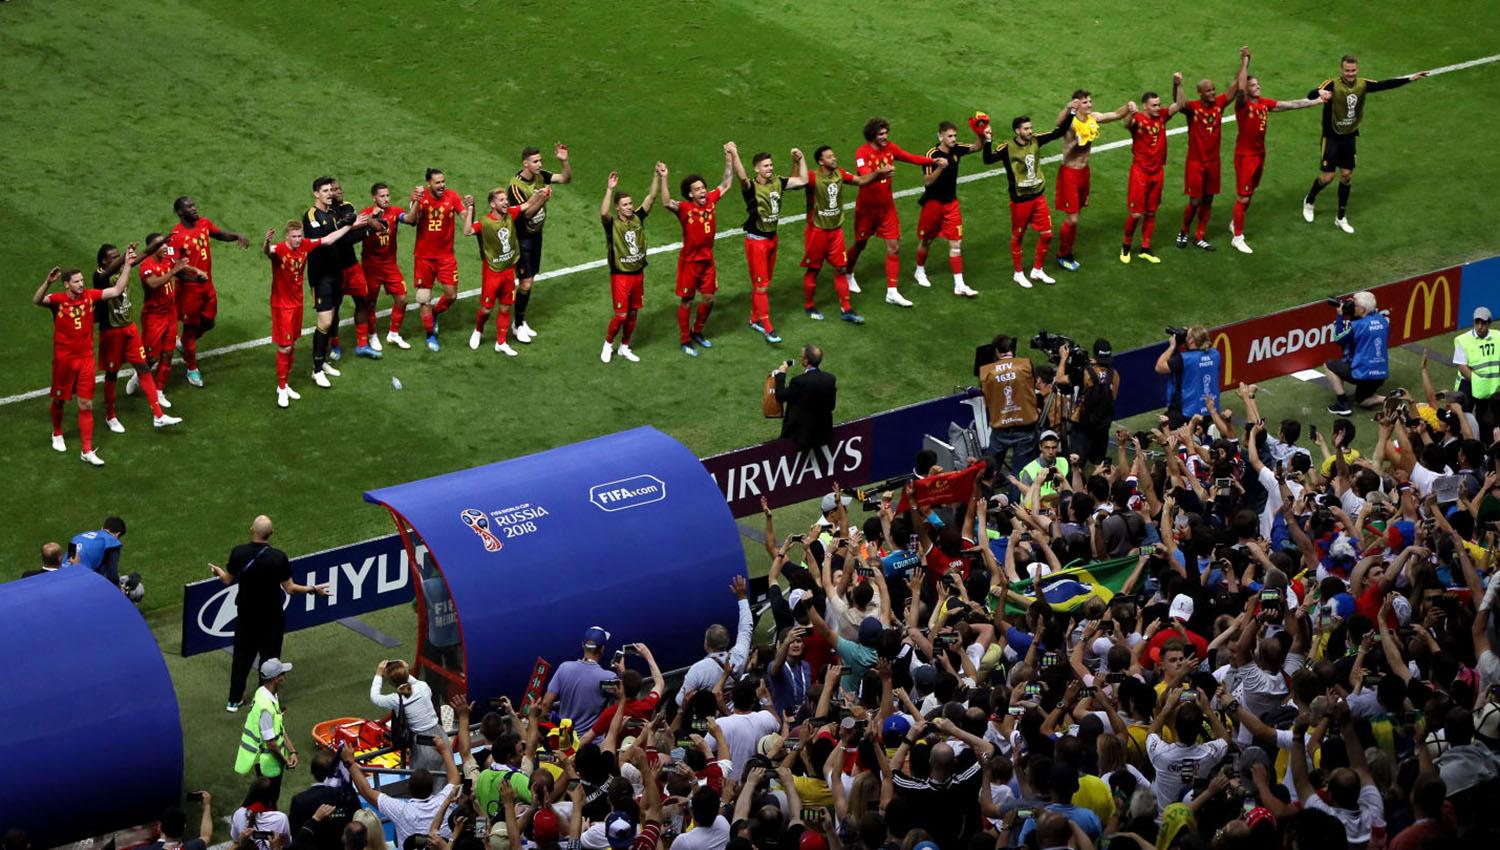 Bélgica llega a semifinales 32 años después de haberlo logrado en México.
FOTO TOMADA DE ES.FIFA.COM